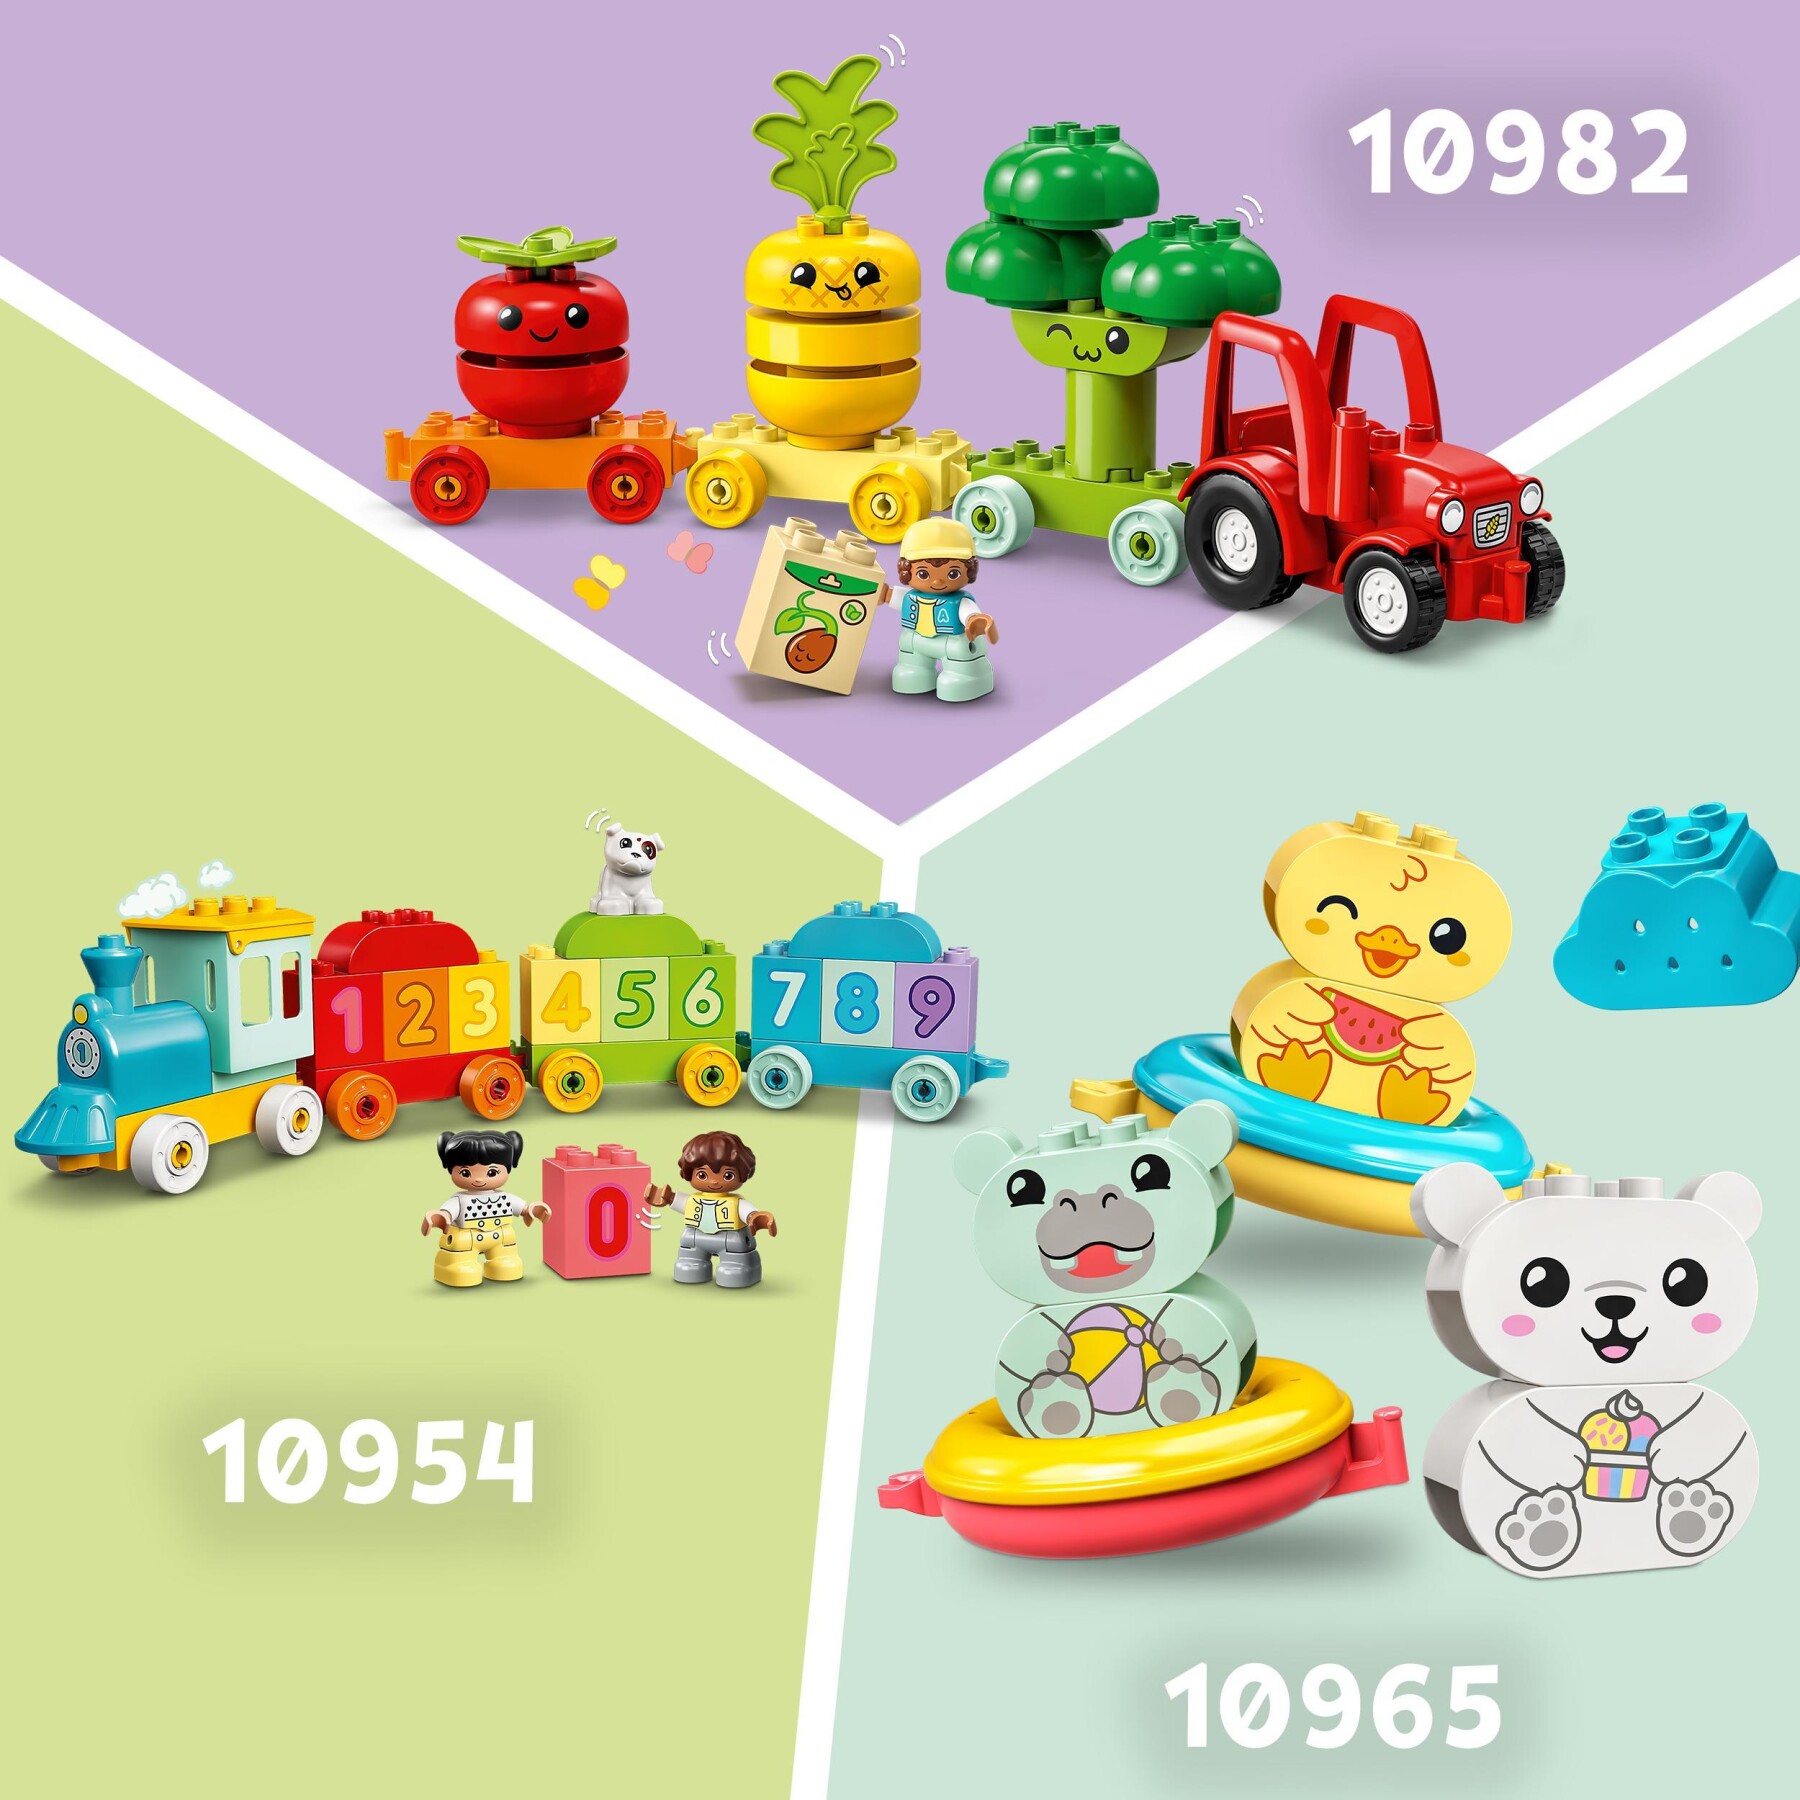 Lego duplo 10412 il treno degli animali, giochi per bambini da 1.5 anni, giocattolo educativo per l'apprendimento didattico - LEGO DUPLO